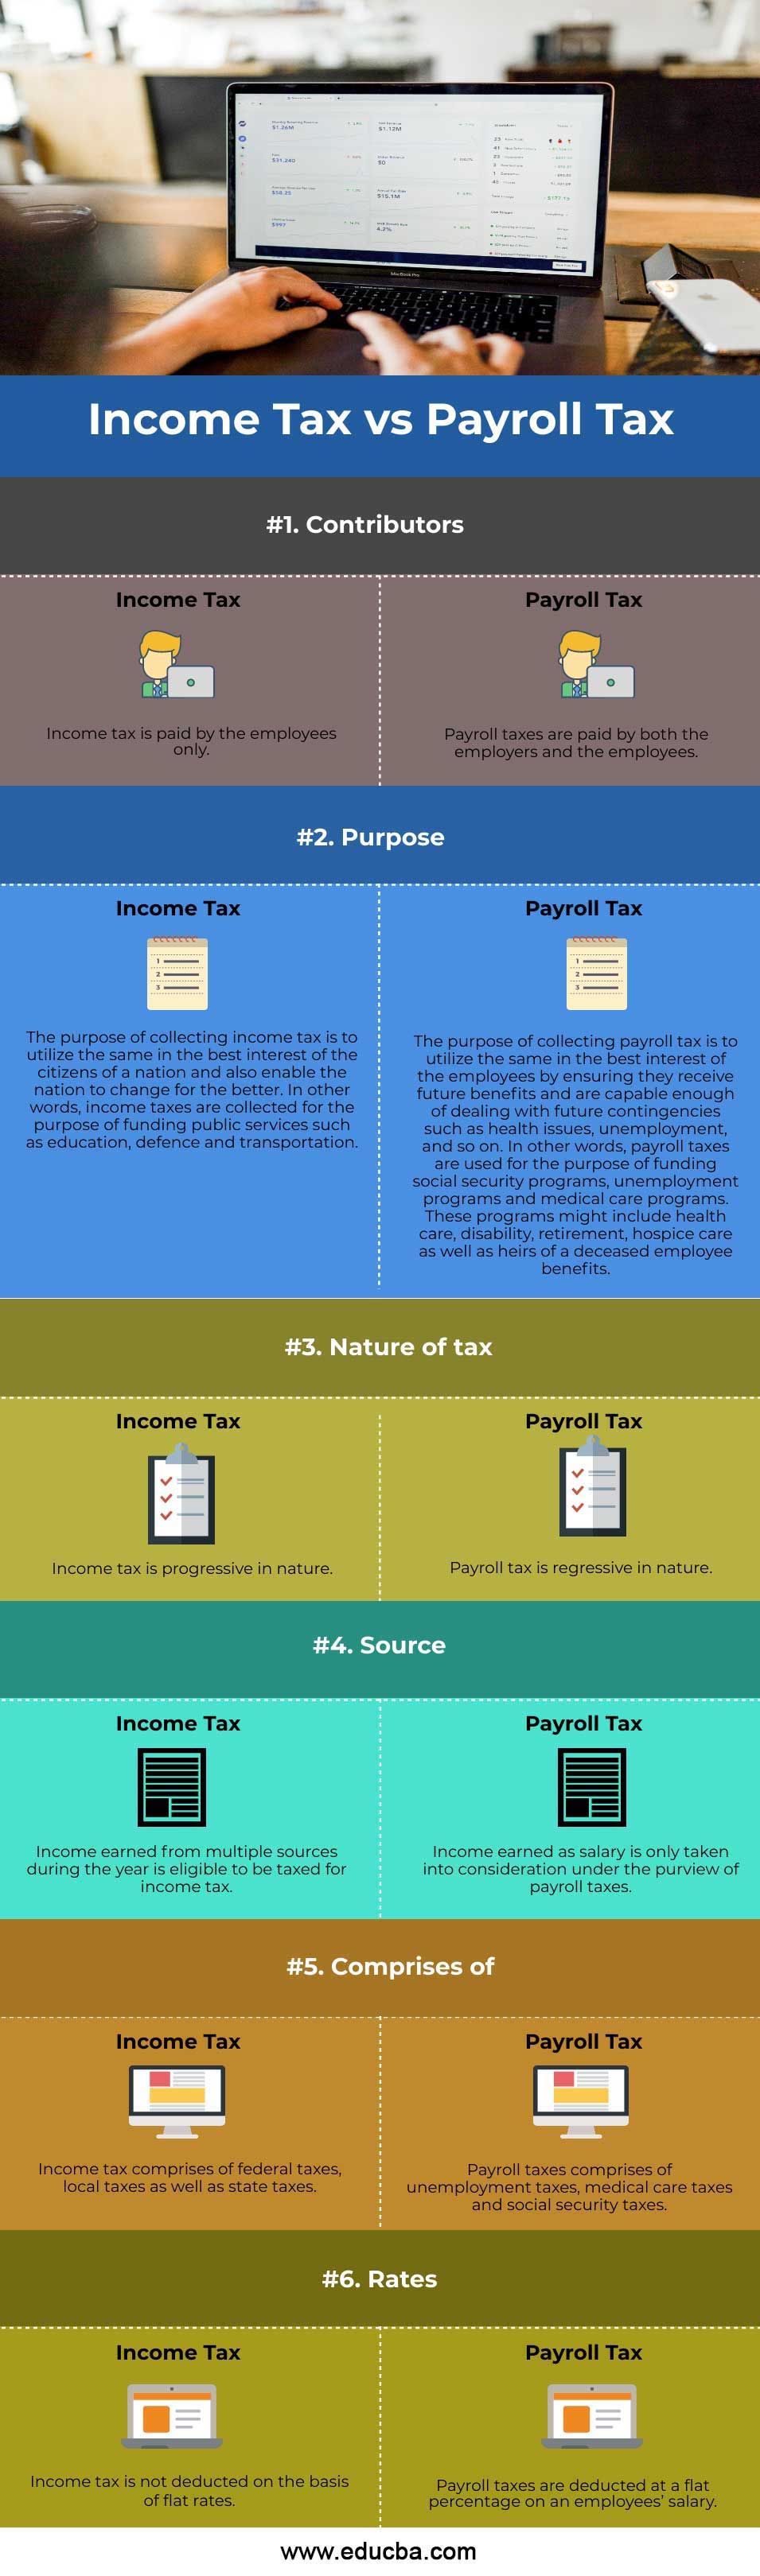 Income-Tax-vs-Payroll-Tax-info